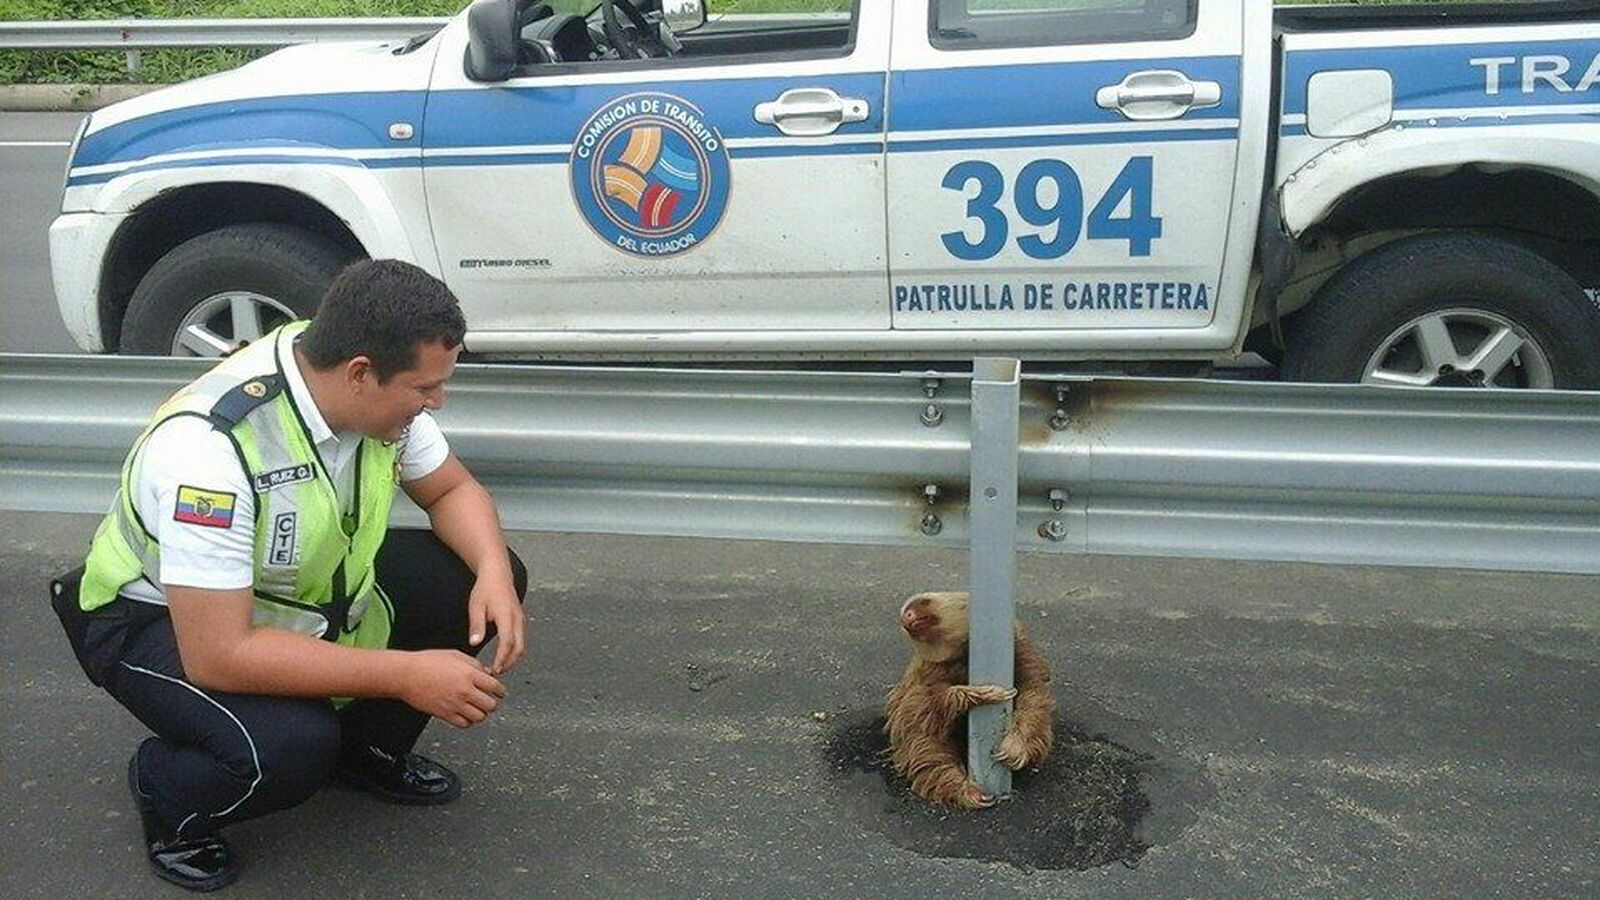 Foto: Uno de los agentes, junto al oso perezoso encontrado en Ecuador (Facebook/Comisión de Tránsito del Ecuador)